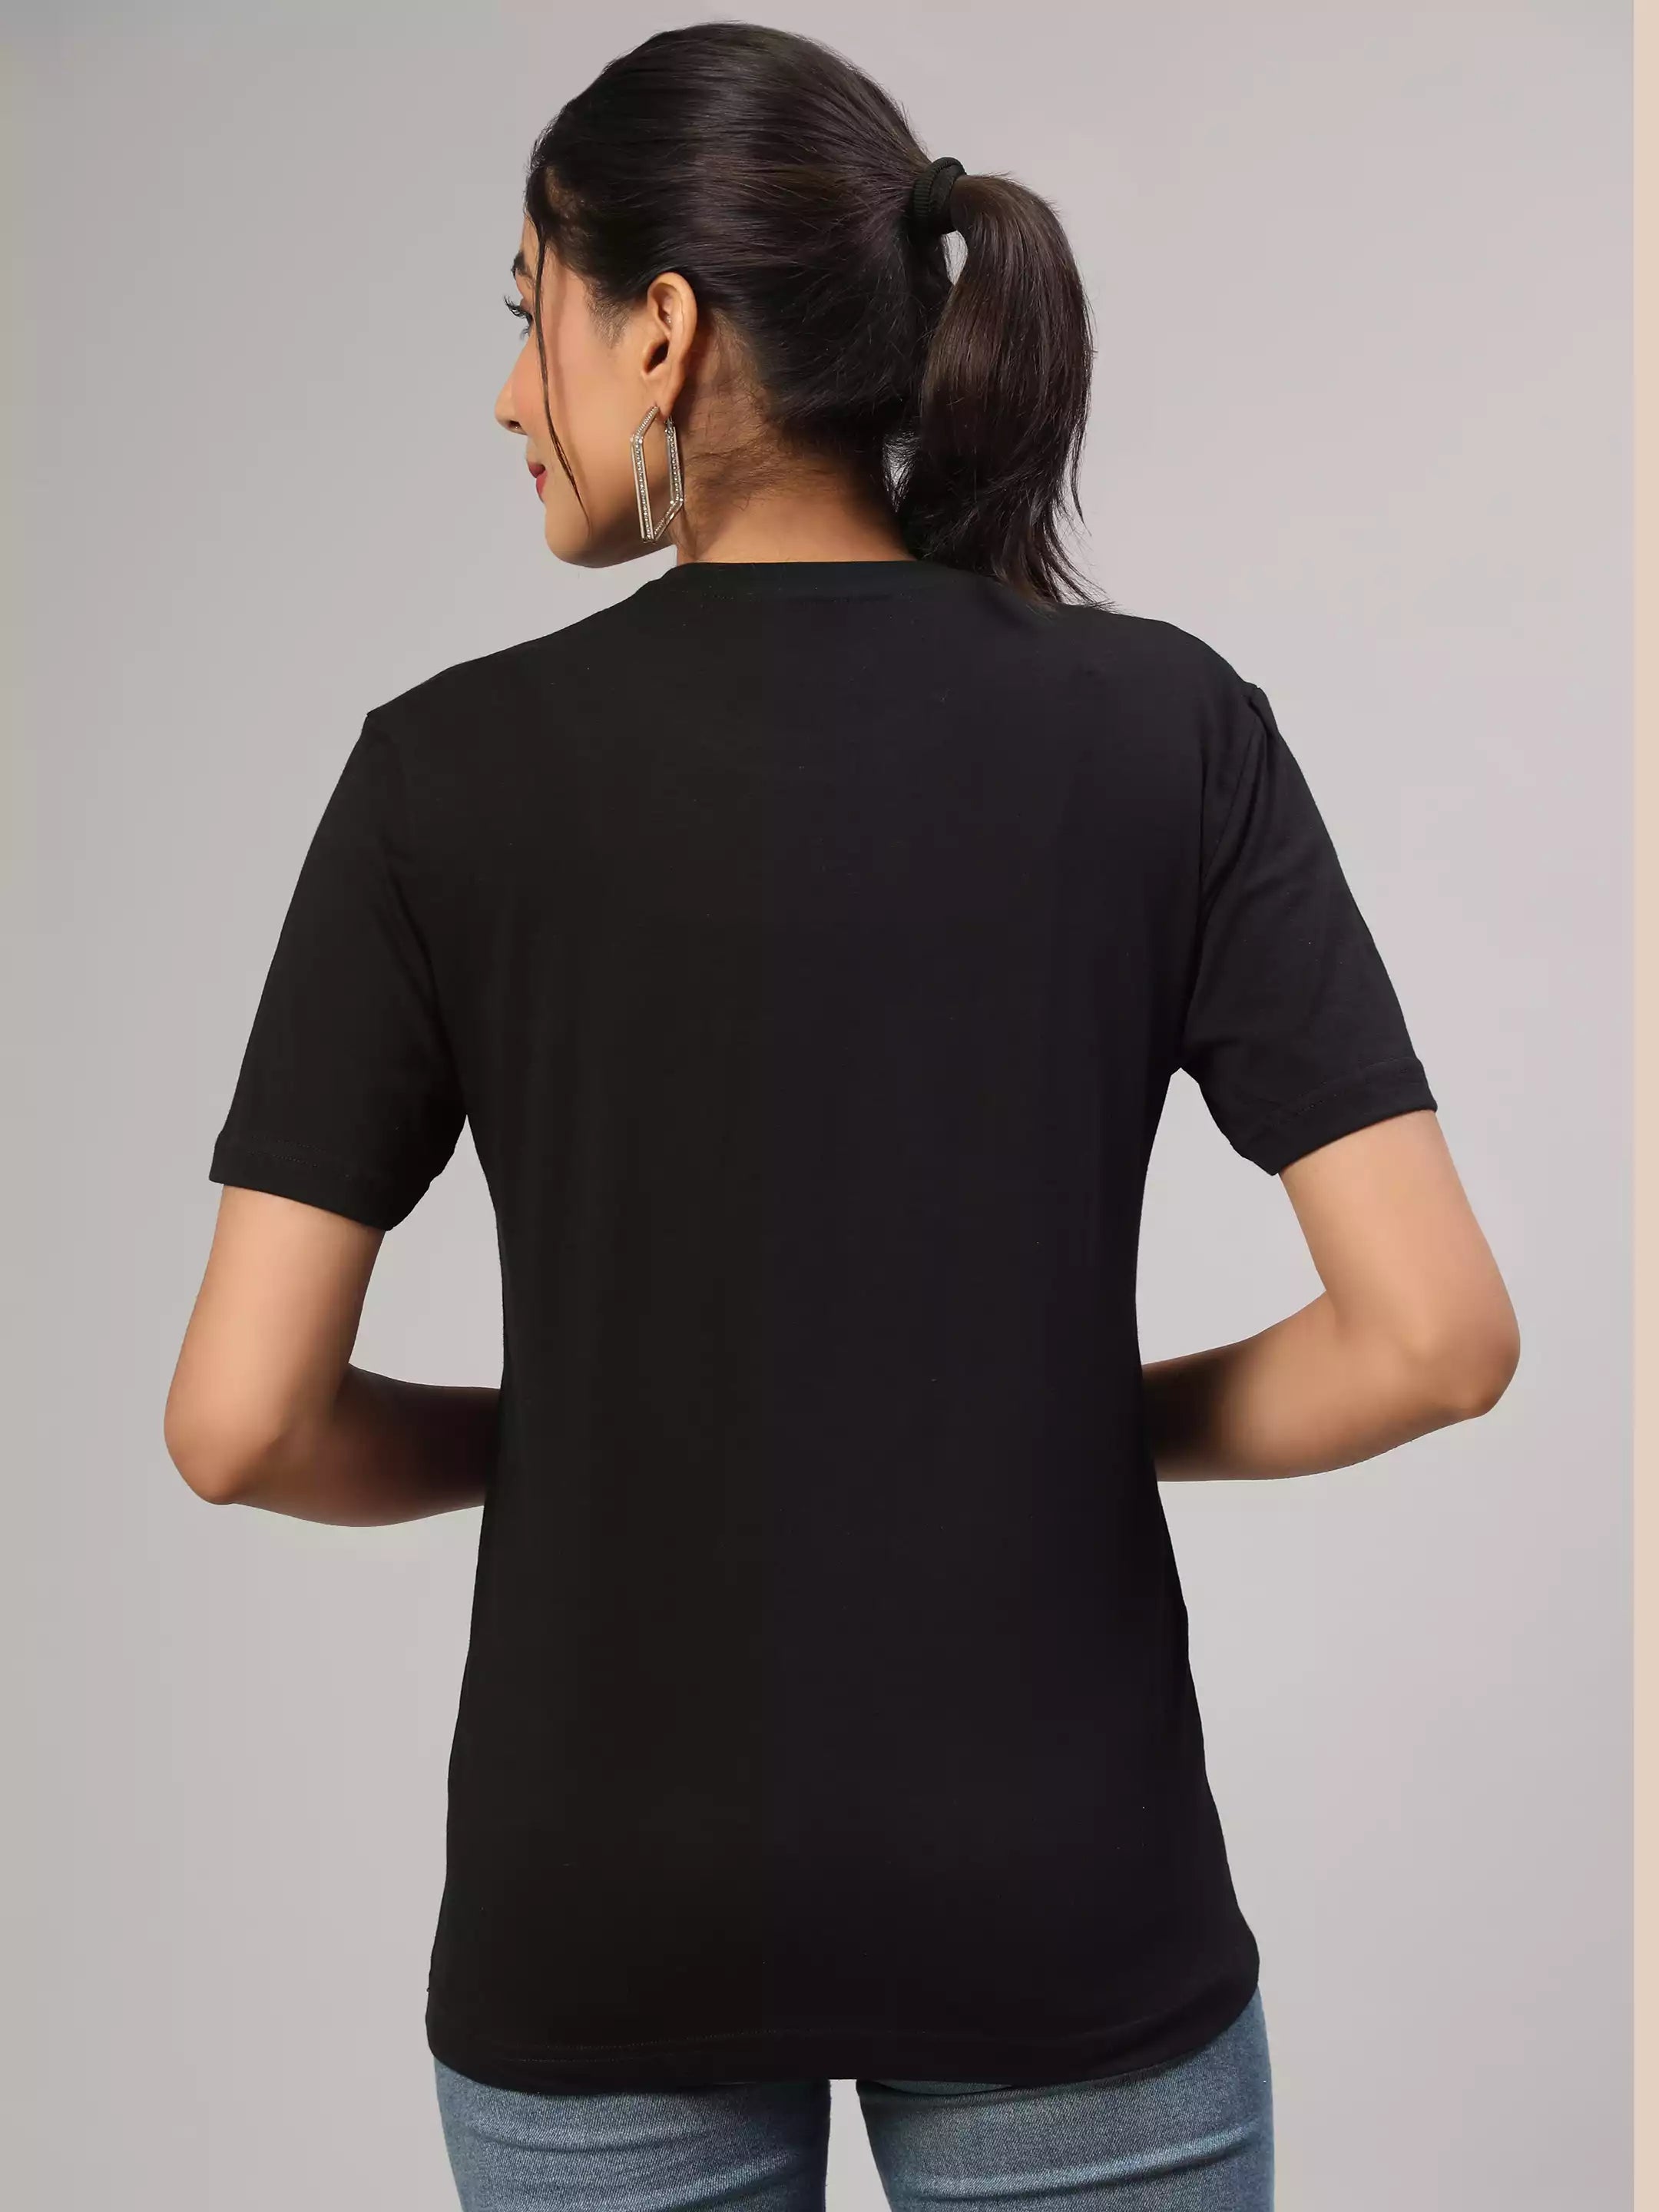 All Road Leads To OM - Sukhiaatma Unisex Graphic Printed Black T-shirt